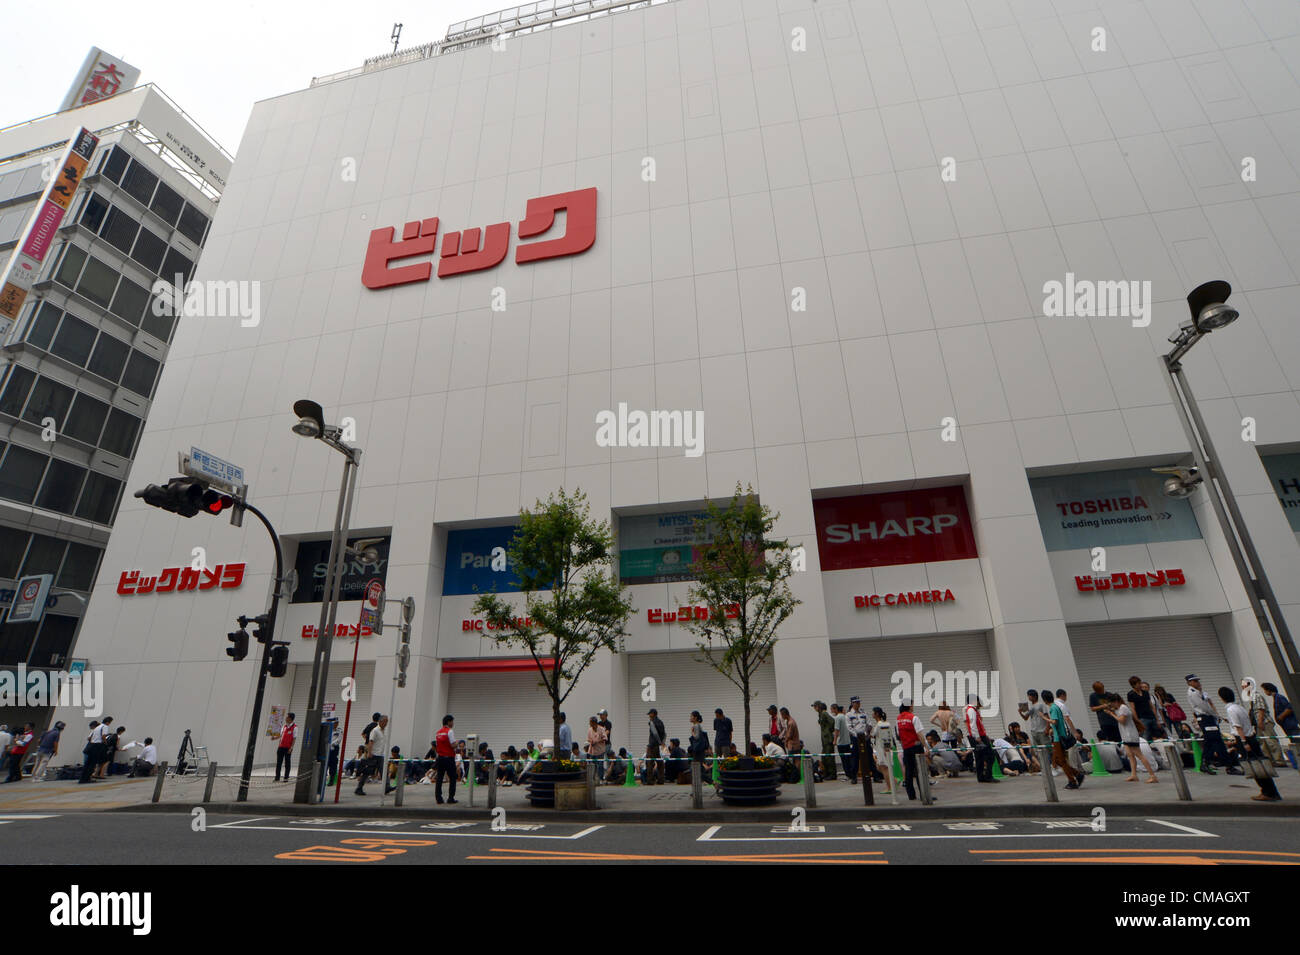 El 5 de julio de 2012, Tokio, Japón - Los compradores esperan en fila para la inauguración de Bic cámaras almacén más grande en el área de Shinjuku Tokyos el jueves, 05 de julio de 2012. La nueva salida de Japans descuento principales home aparato eléctrico es el tercero en la zona de Shinjuku y cuenta con la mayor sala de ventas entre todas Bic tiendas de cámaras. (Foto por Natsuki Sakai/AFLO) AYF -sig- Foto de stock